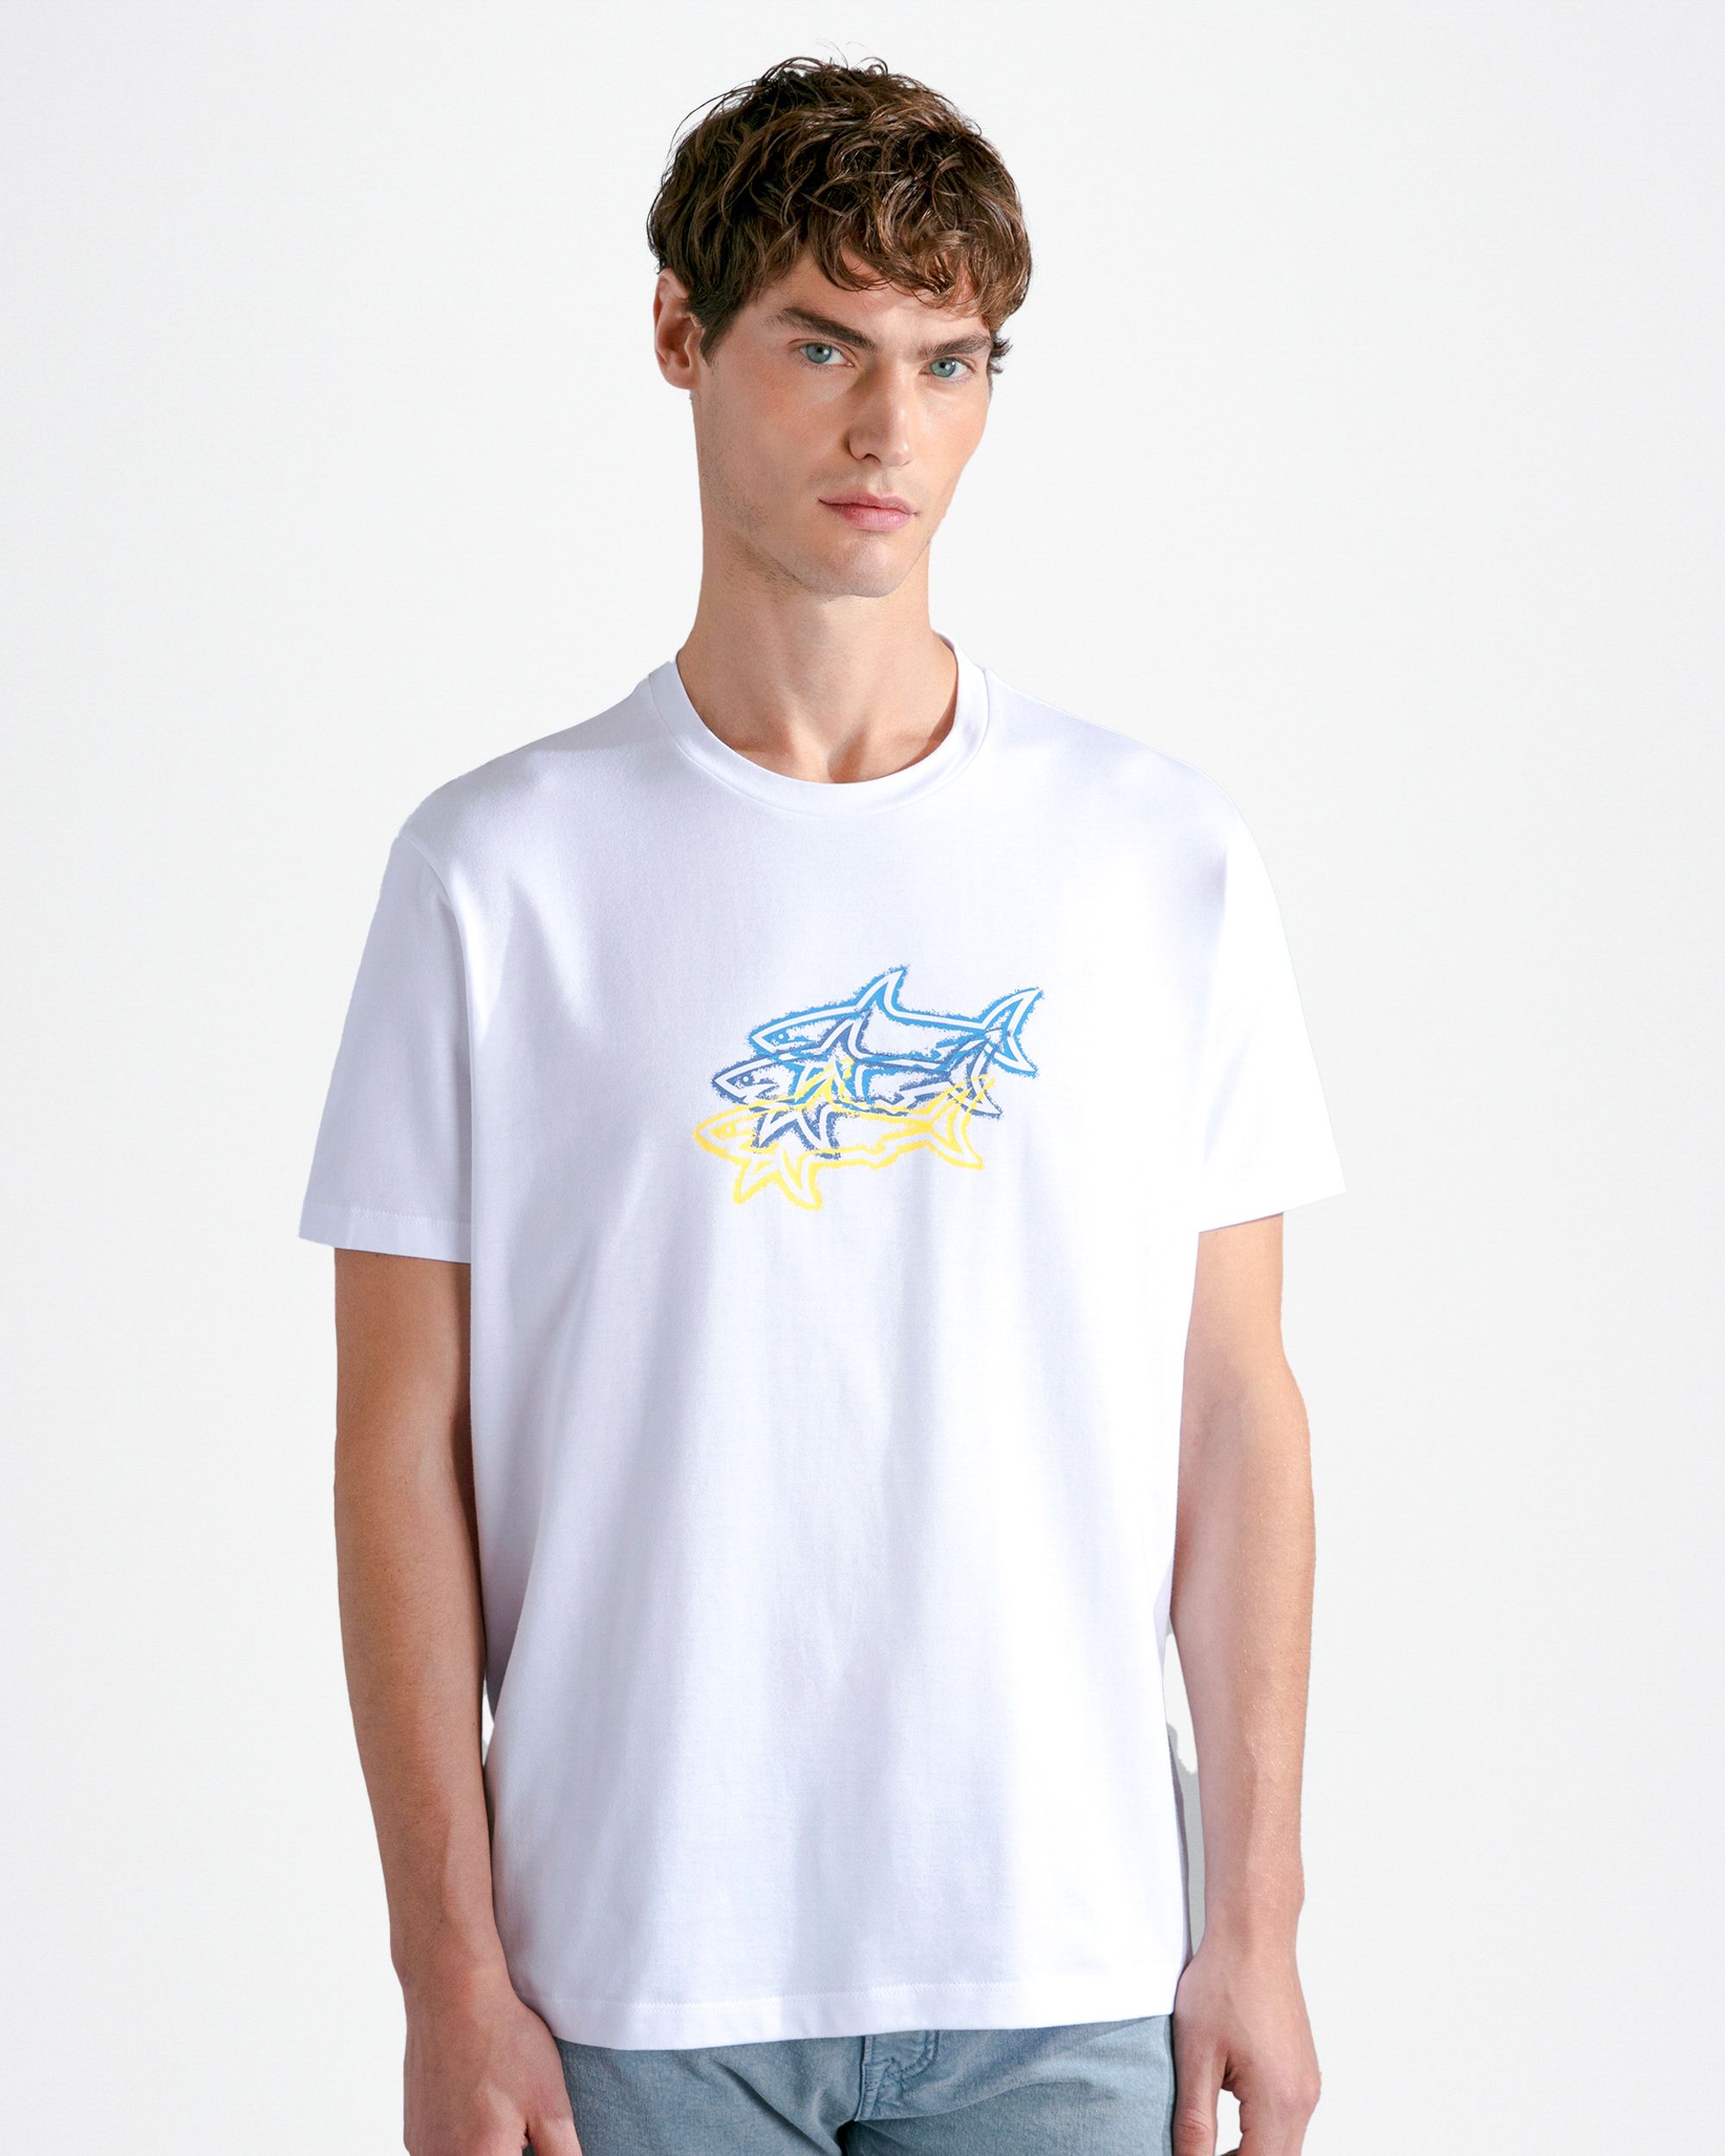 Paul & Shark T-shirt KM Ecru 092032-001-M